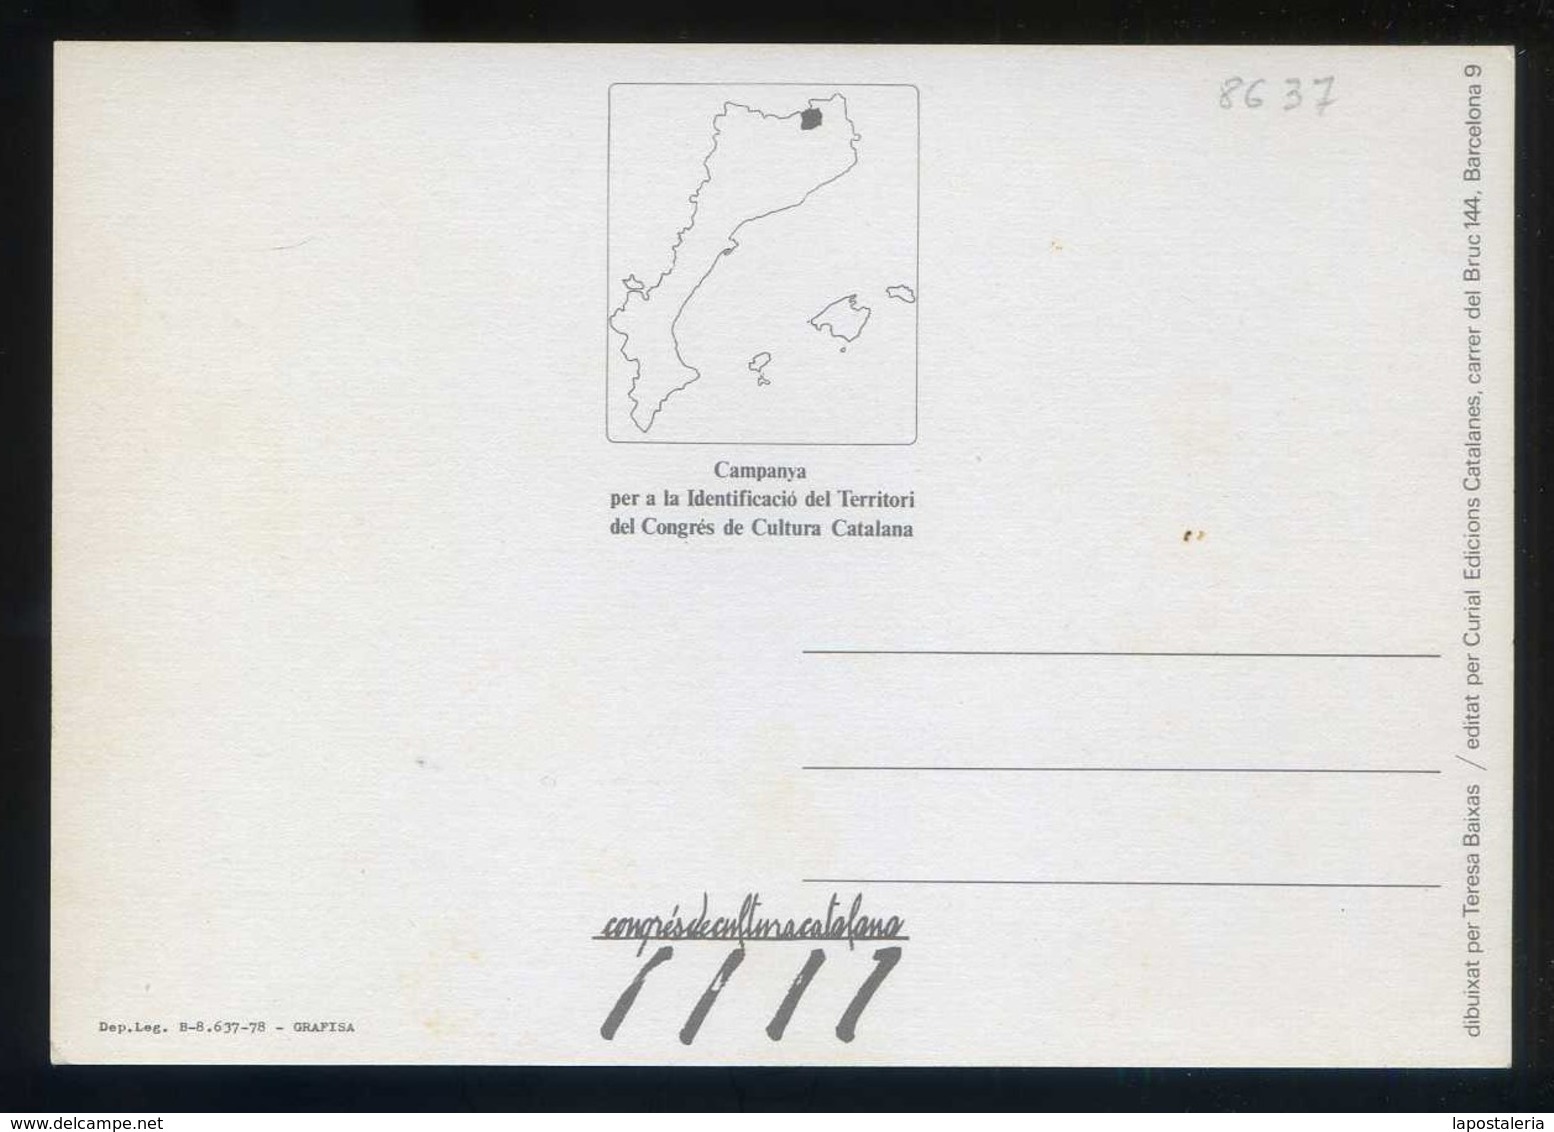 CCC 1977. *Campanya per la identificació del Territori* Lote 50 diferentes.